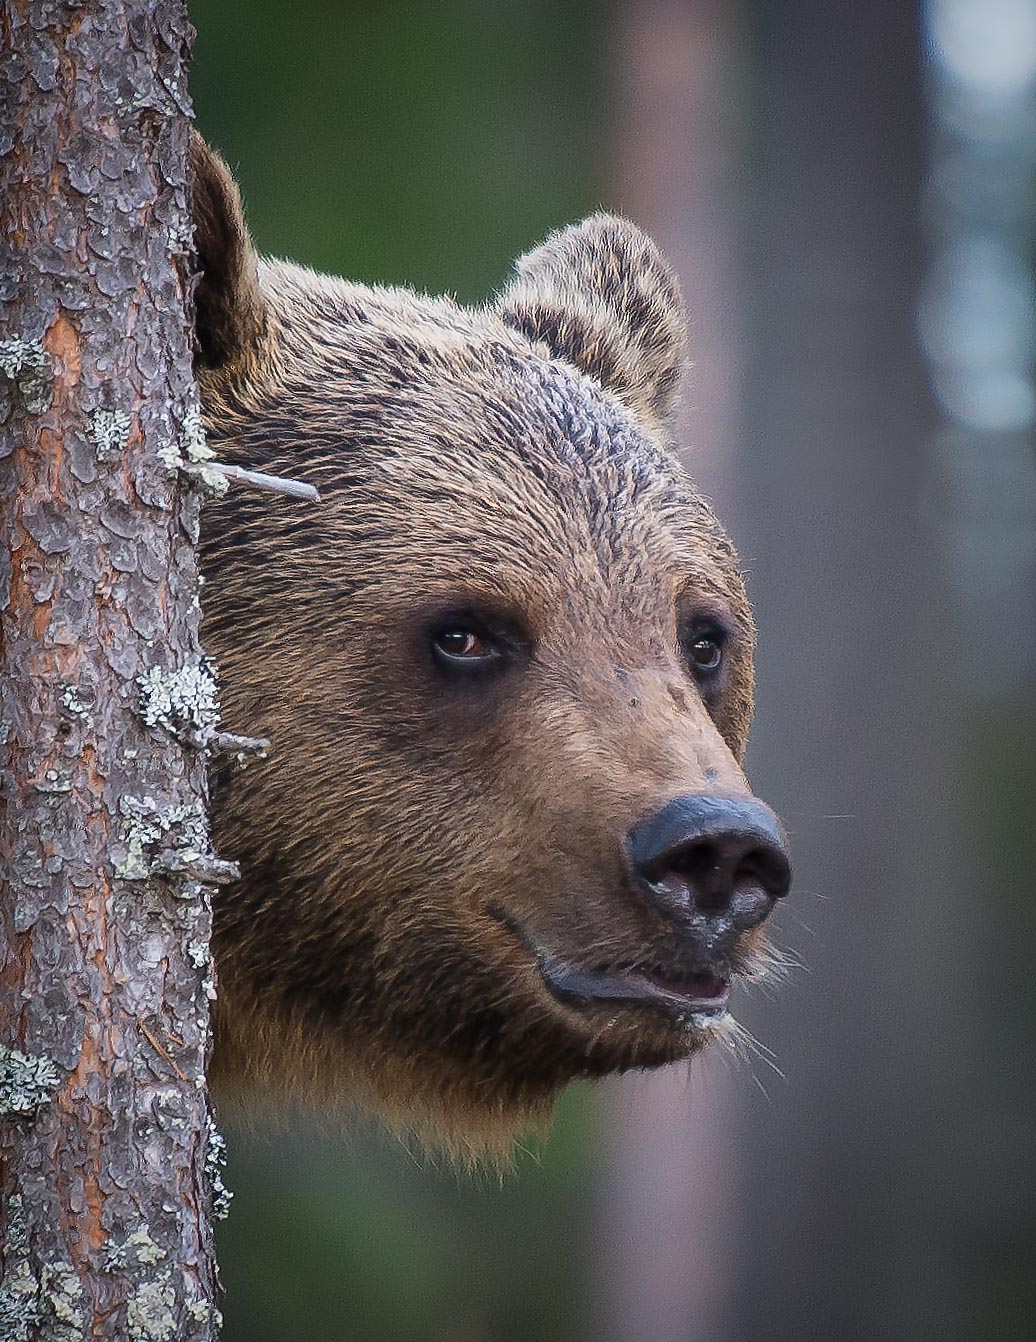 Bear, finland, kuhmo, Jarkko Järvinen